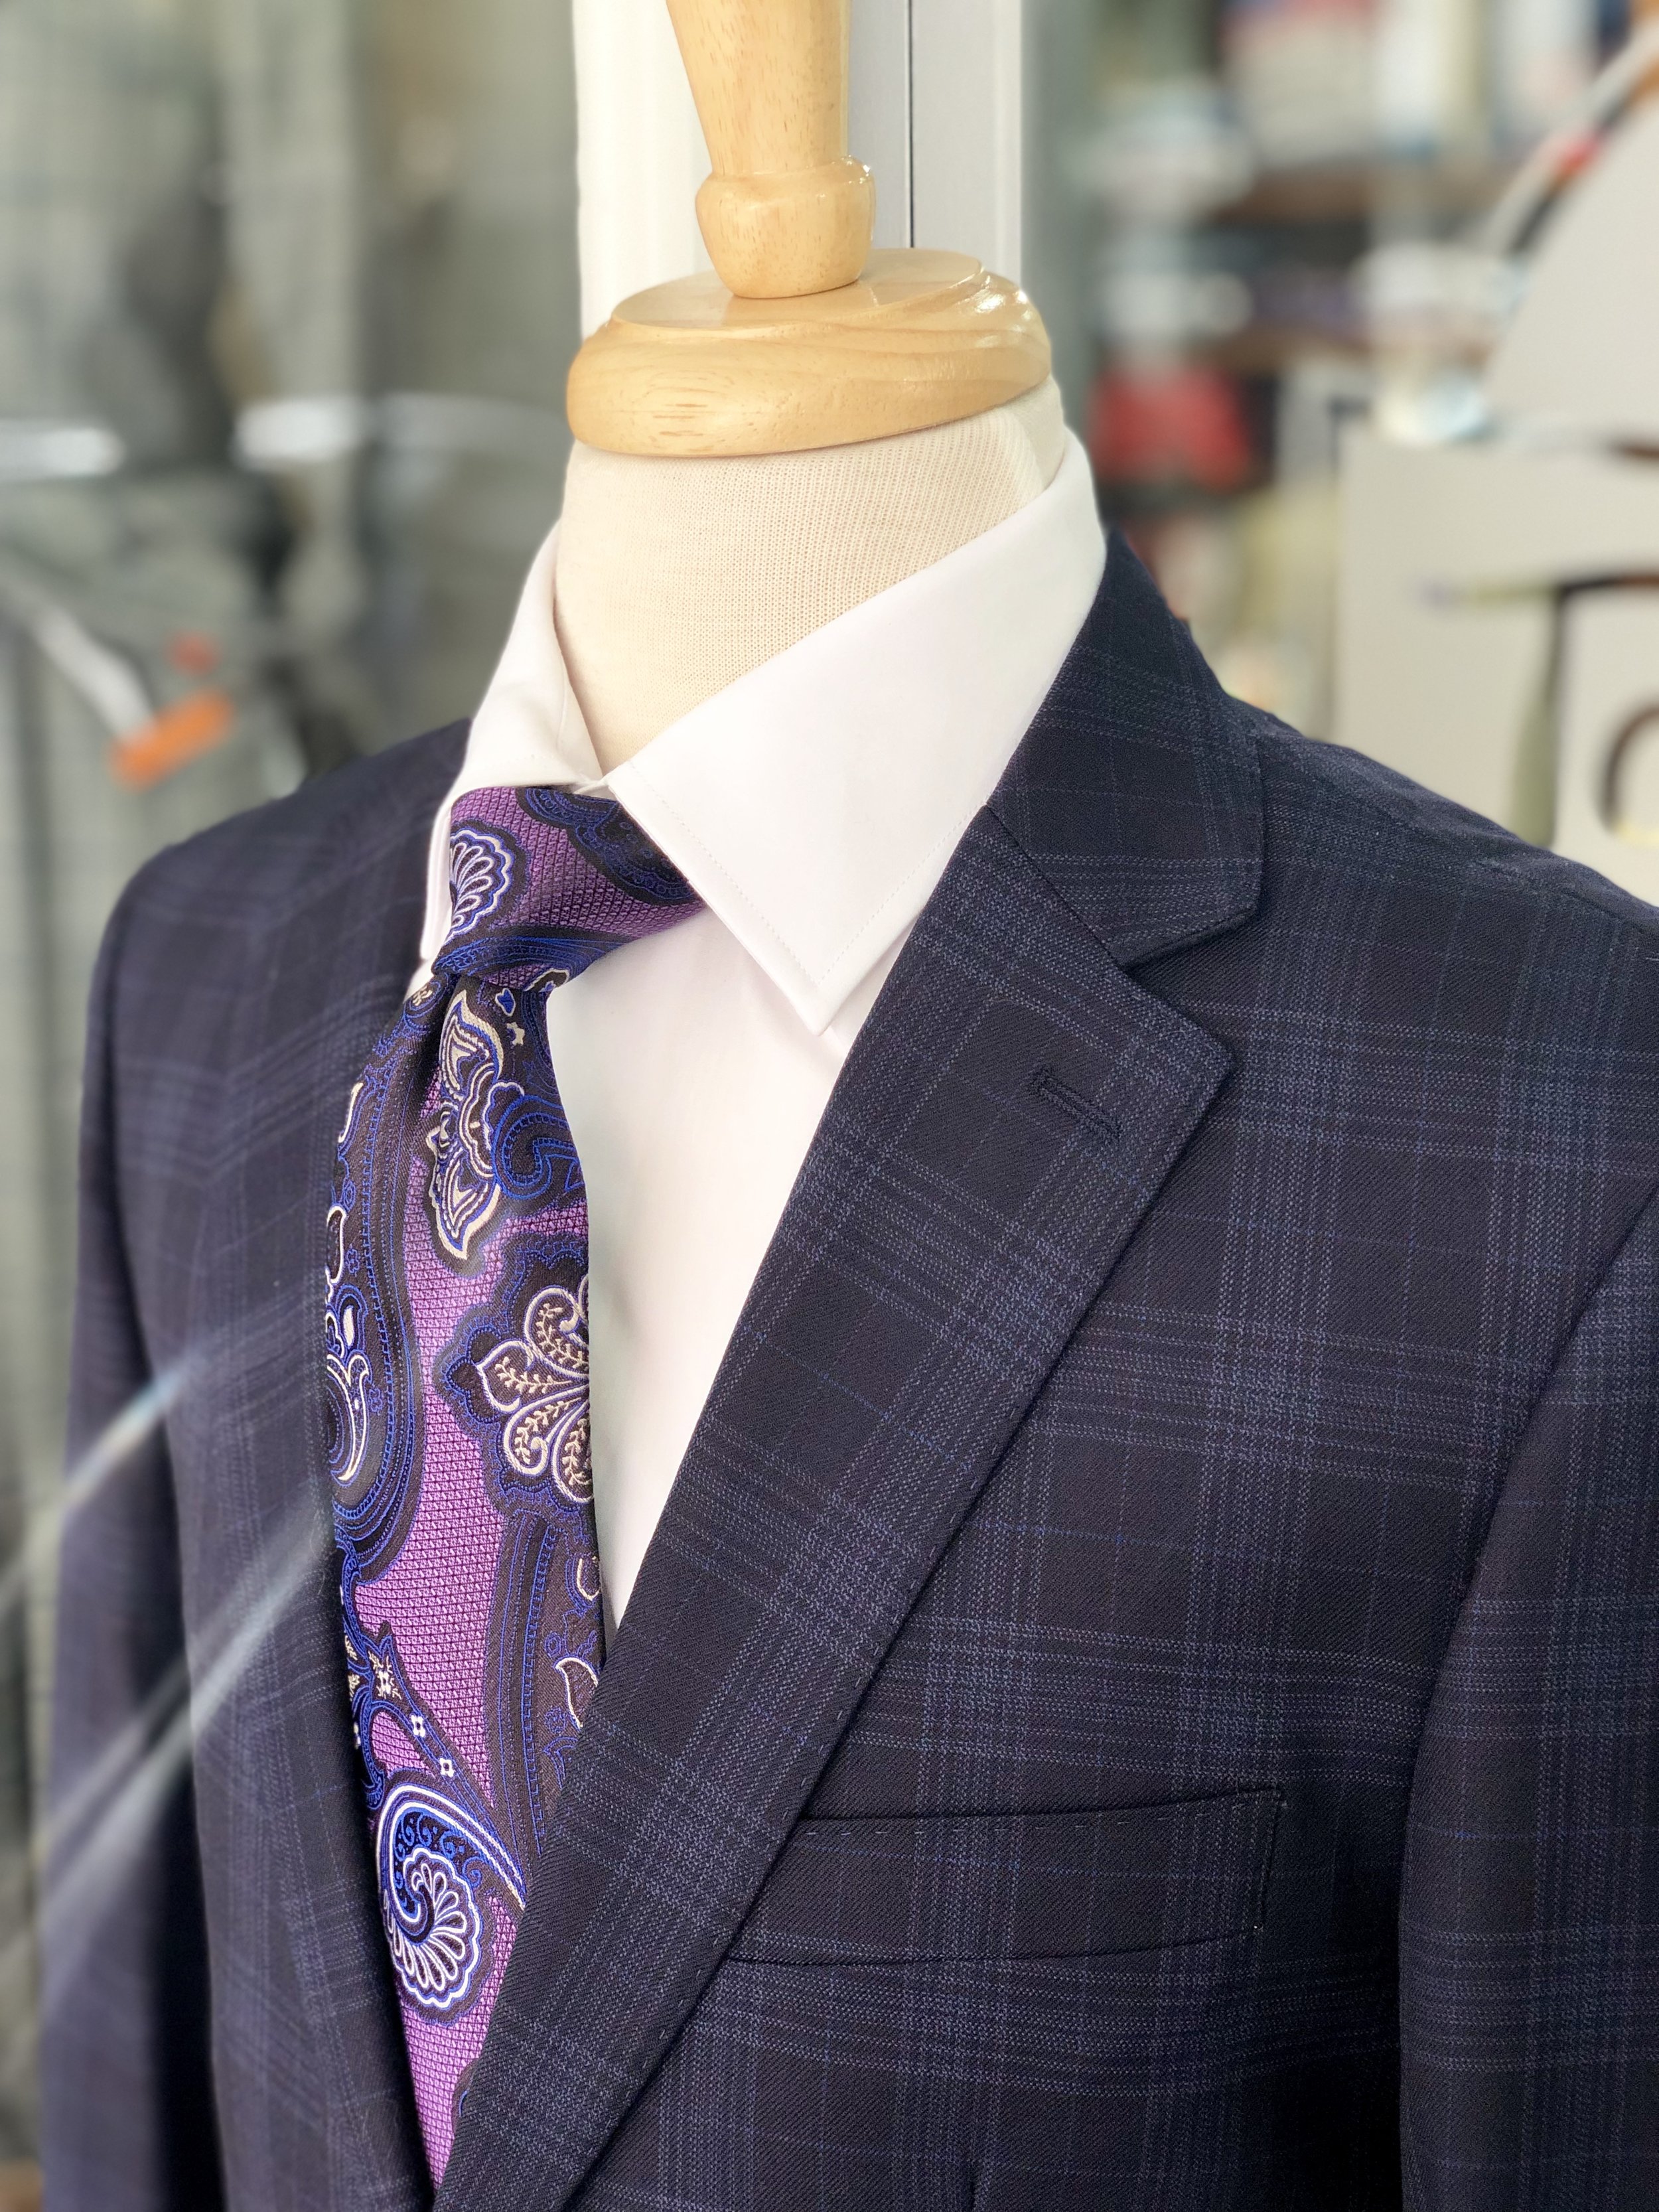 Joseph's Clothier — Mantoni Blue Plaid Suit